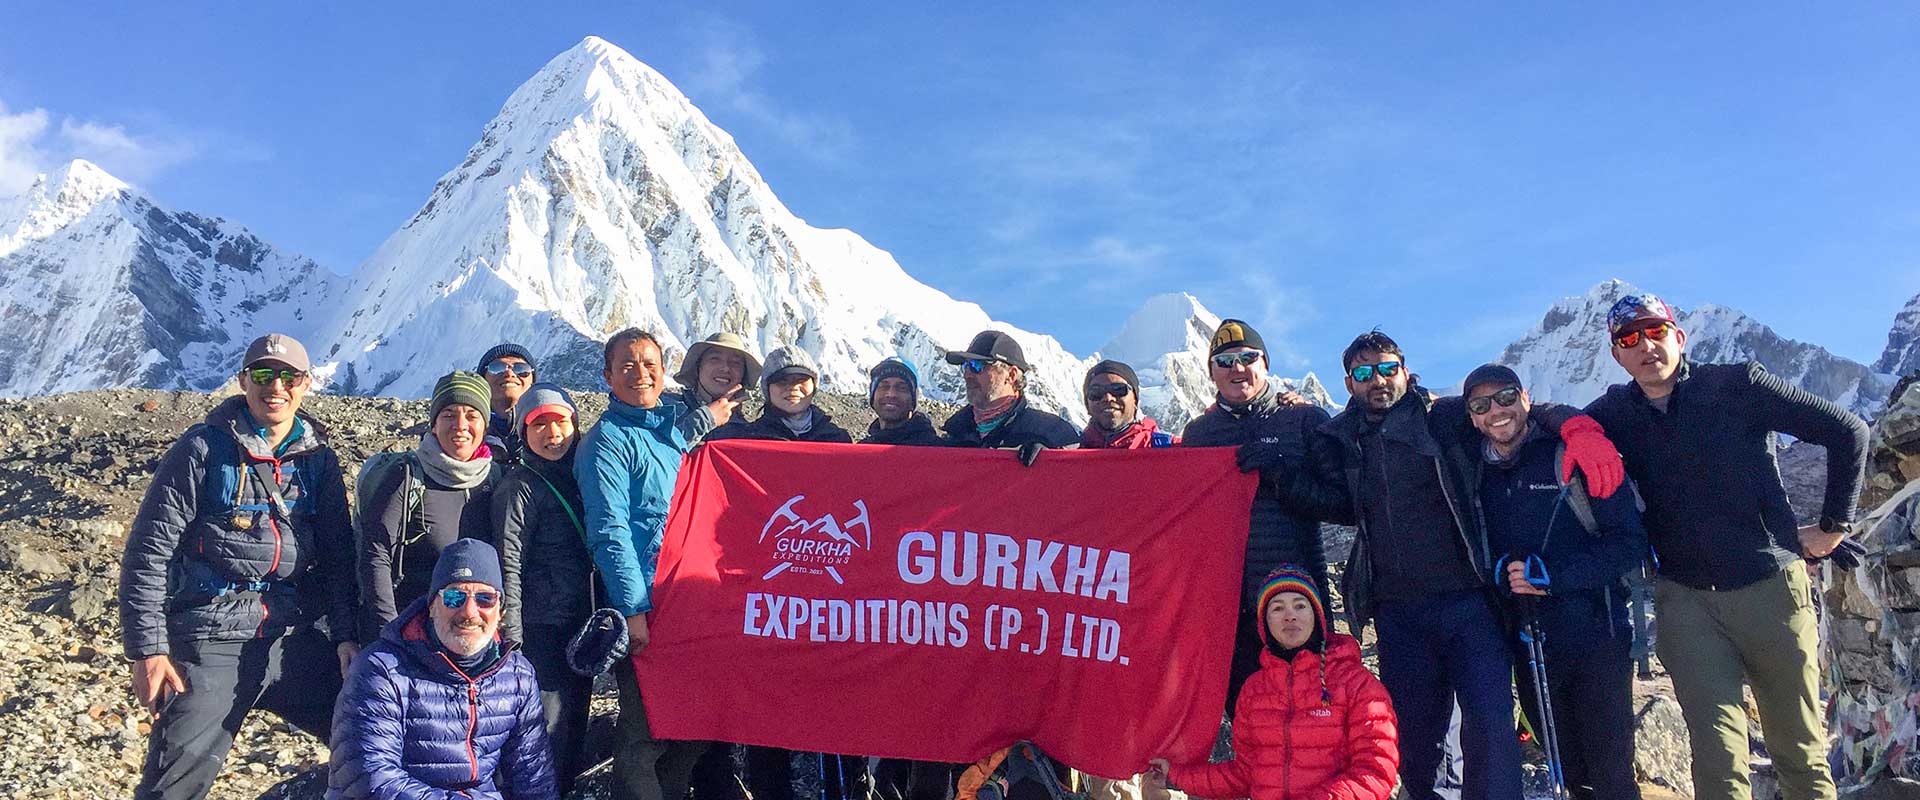 Gurkha Expeditions Trekking Group